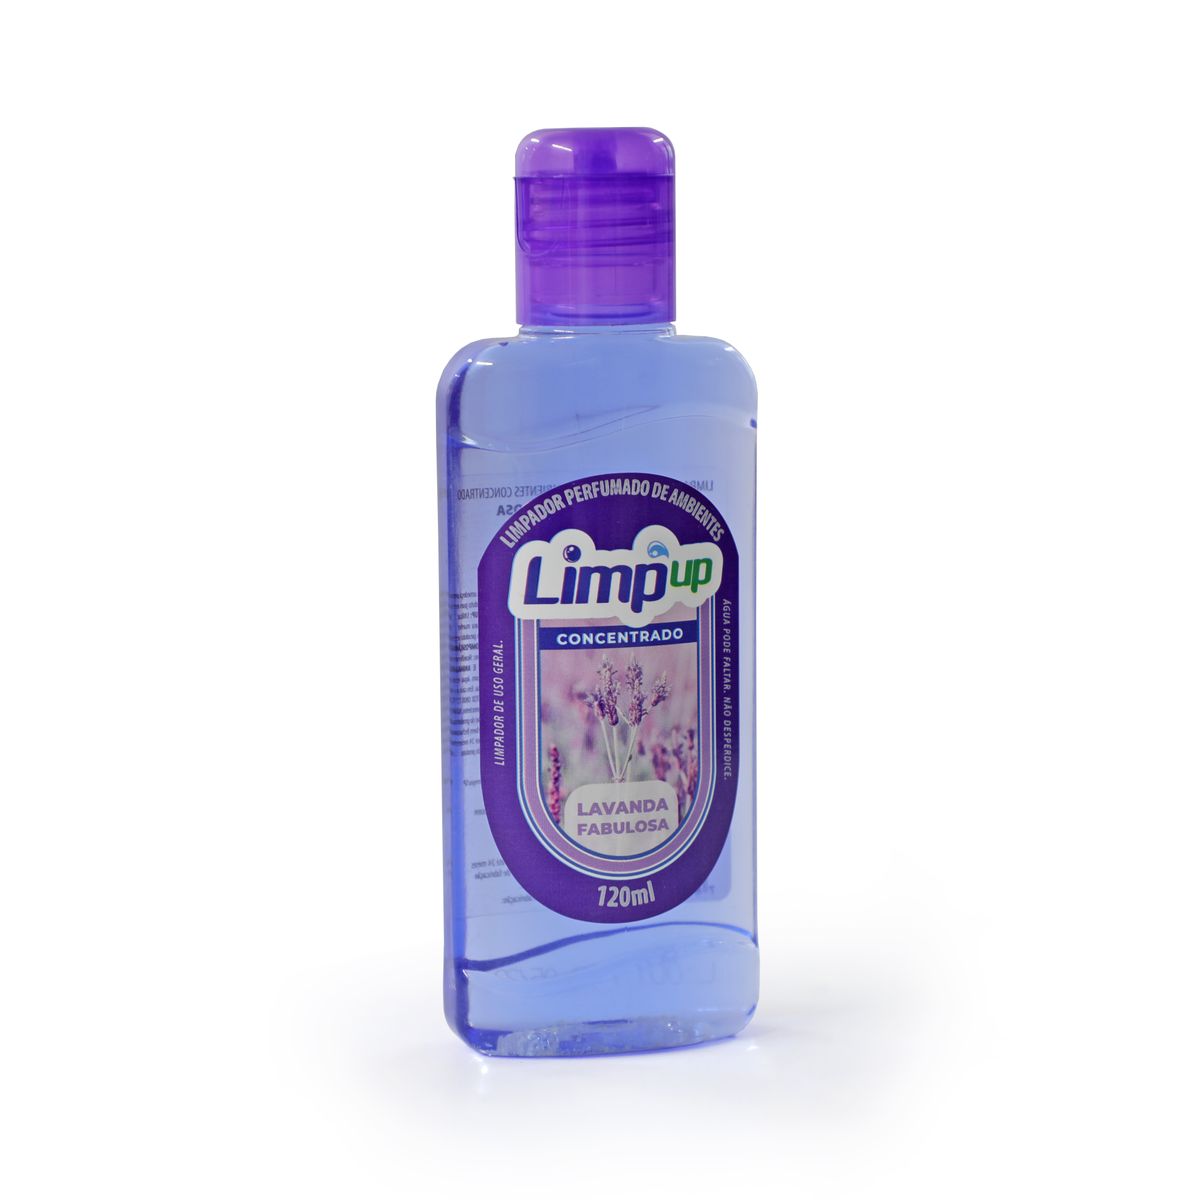 Limpador Perfumado Concentrado Limp Up Lavanda Fabulosa120ml